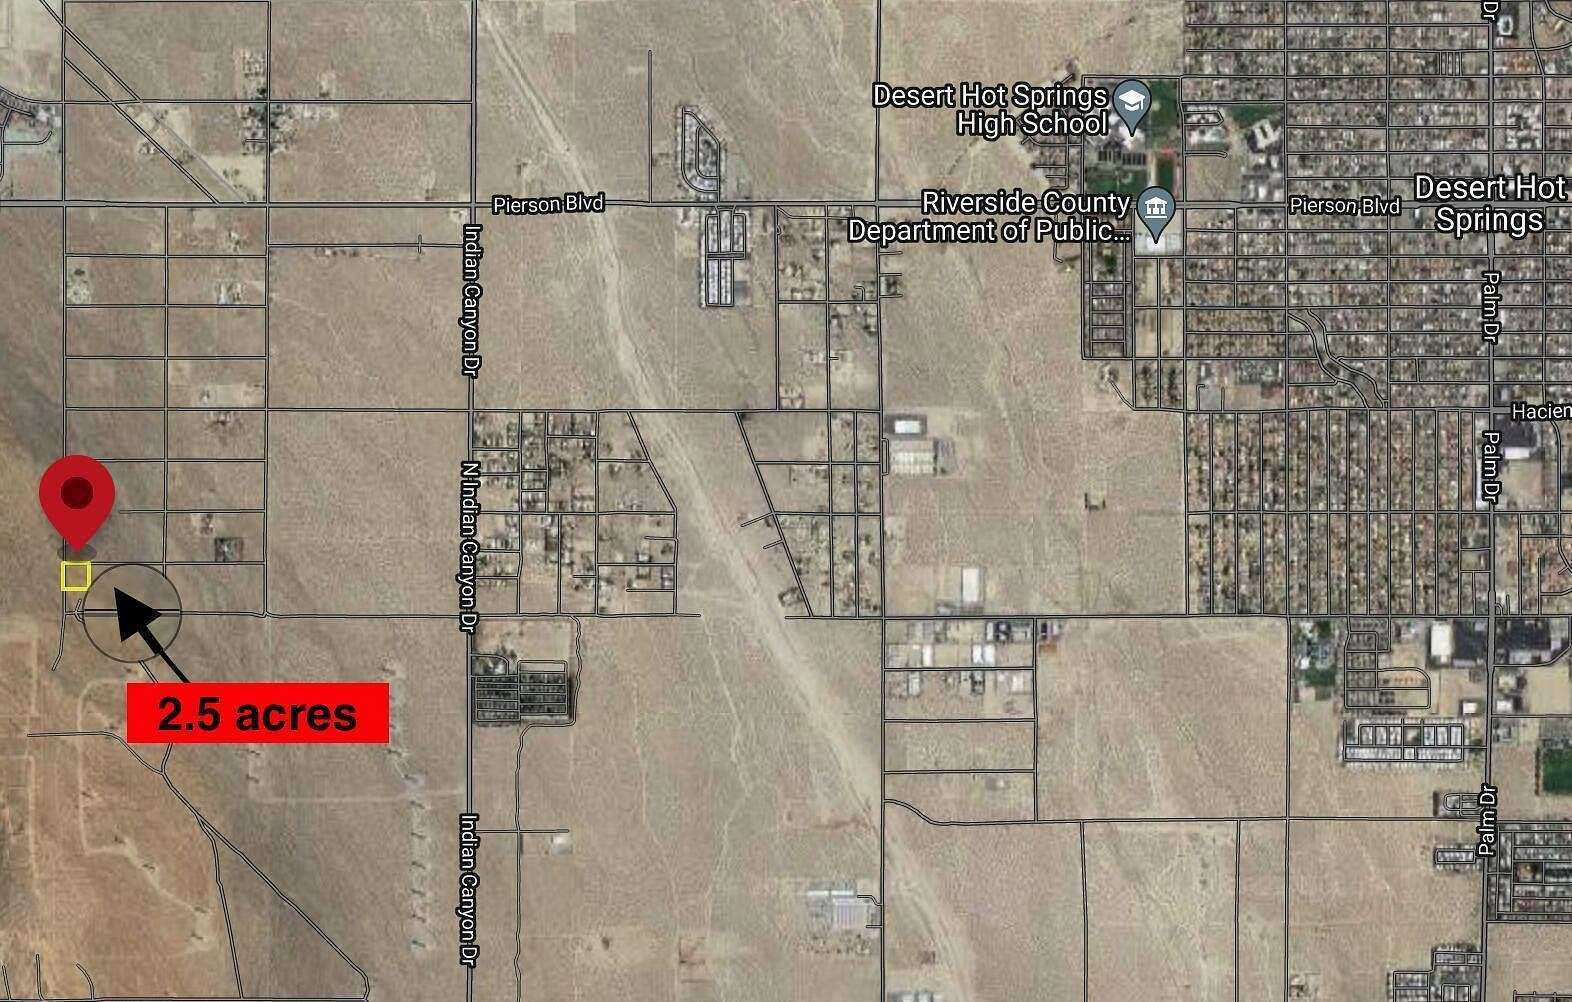 2.6 Acres of Land for Sale in Desert Hot Springs, California